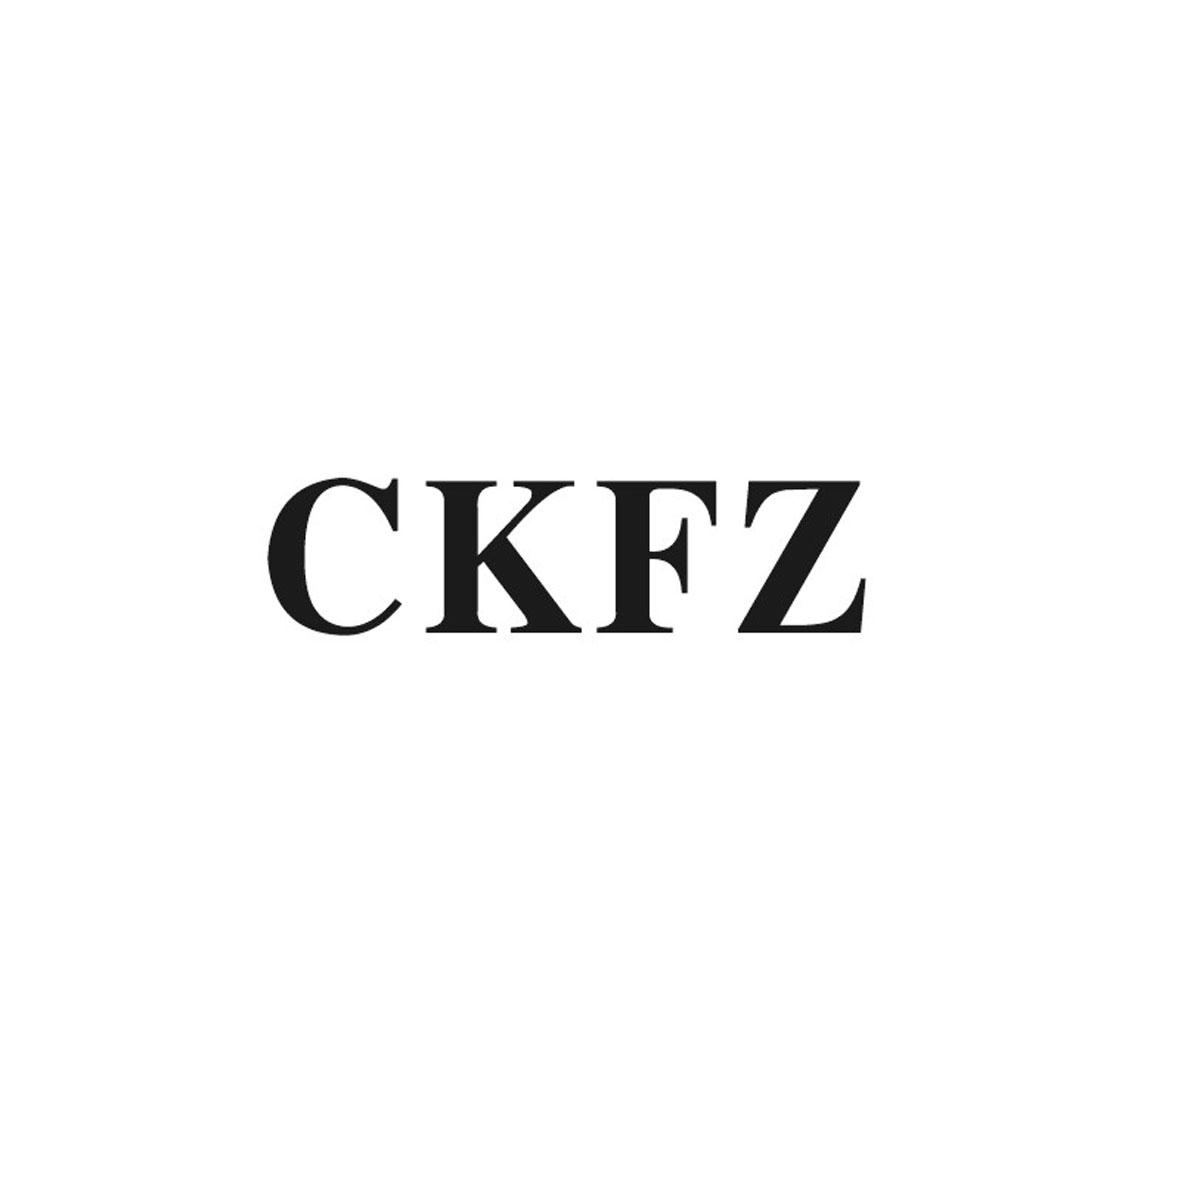 CKFZ